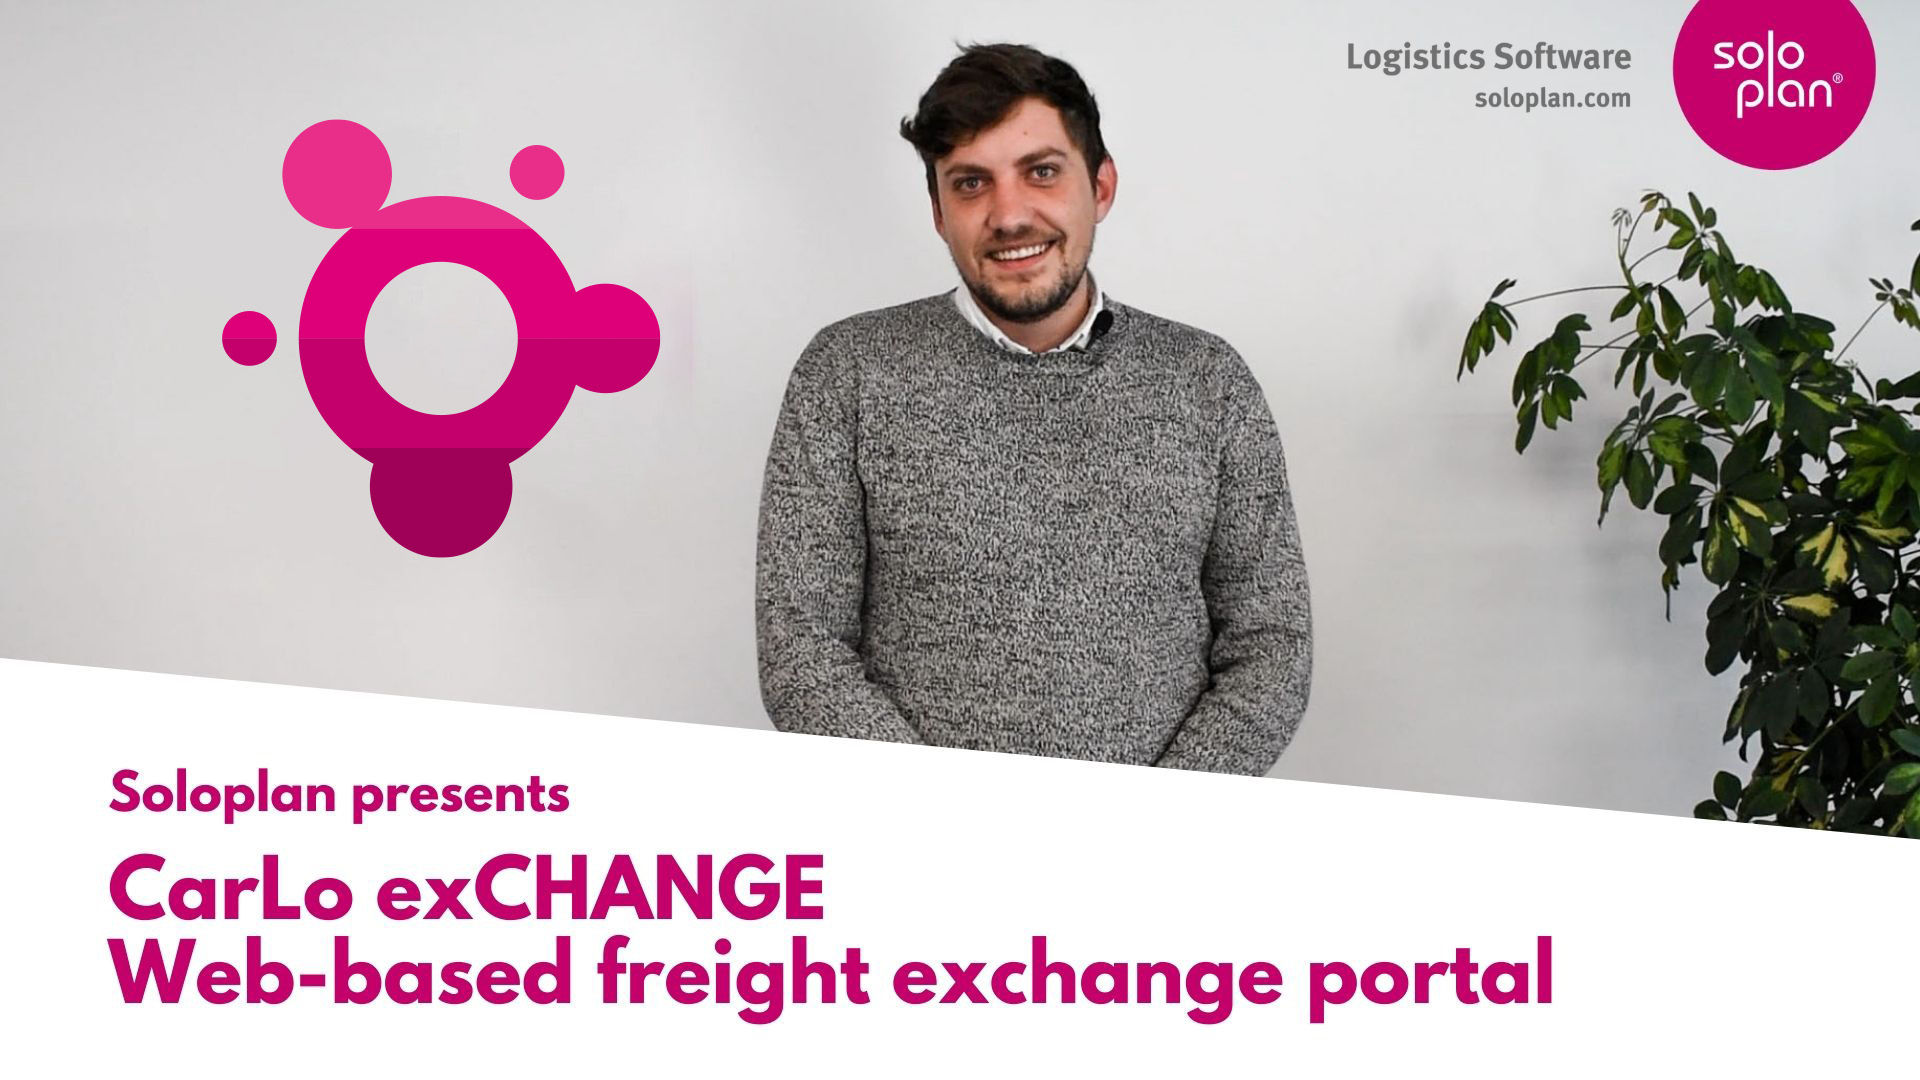 CarLo exCHANGE - Web-based freight exchange portal